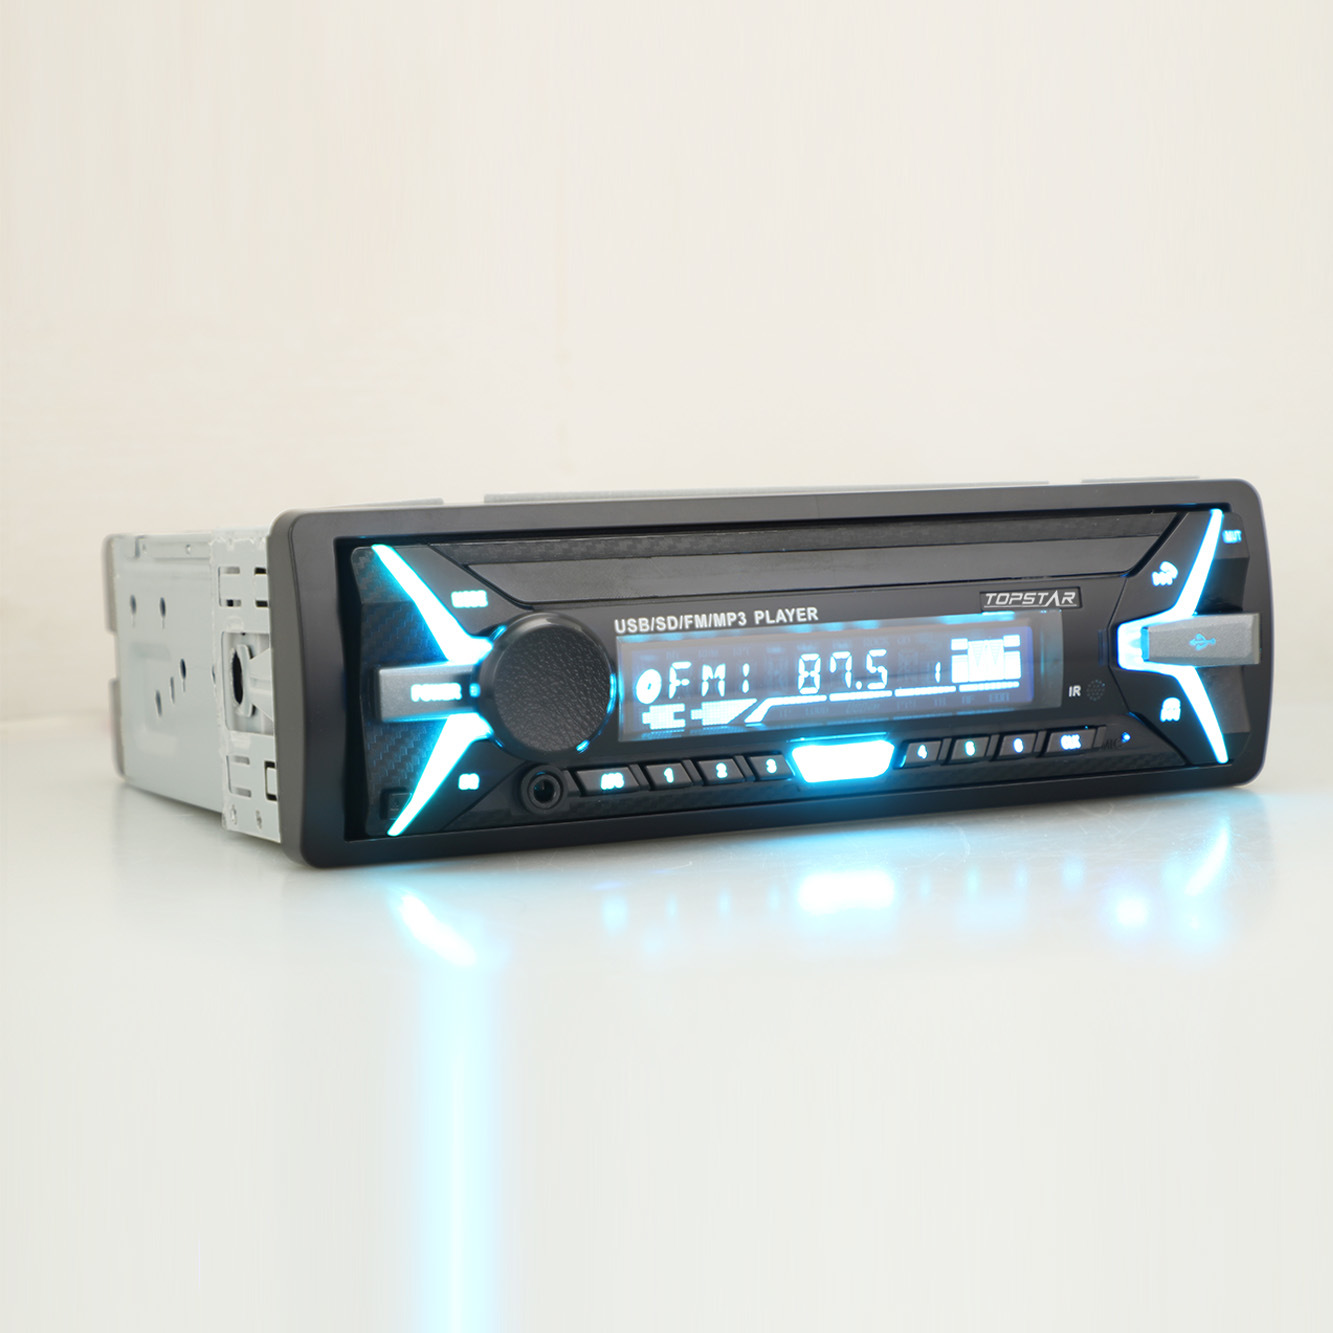 FM الارسال الصوت سيارة MP3 الصوت MP3 على سيارة سيارة الصوت انفصال واحد DIN سيارة مشغل MP3